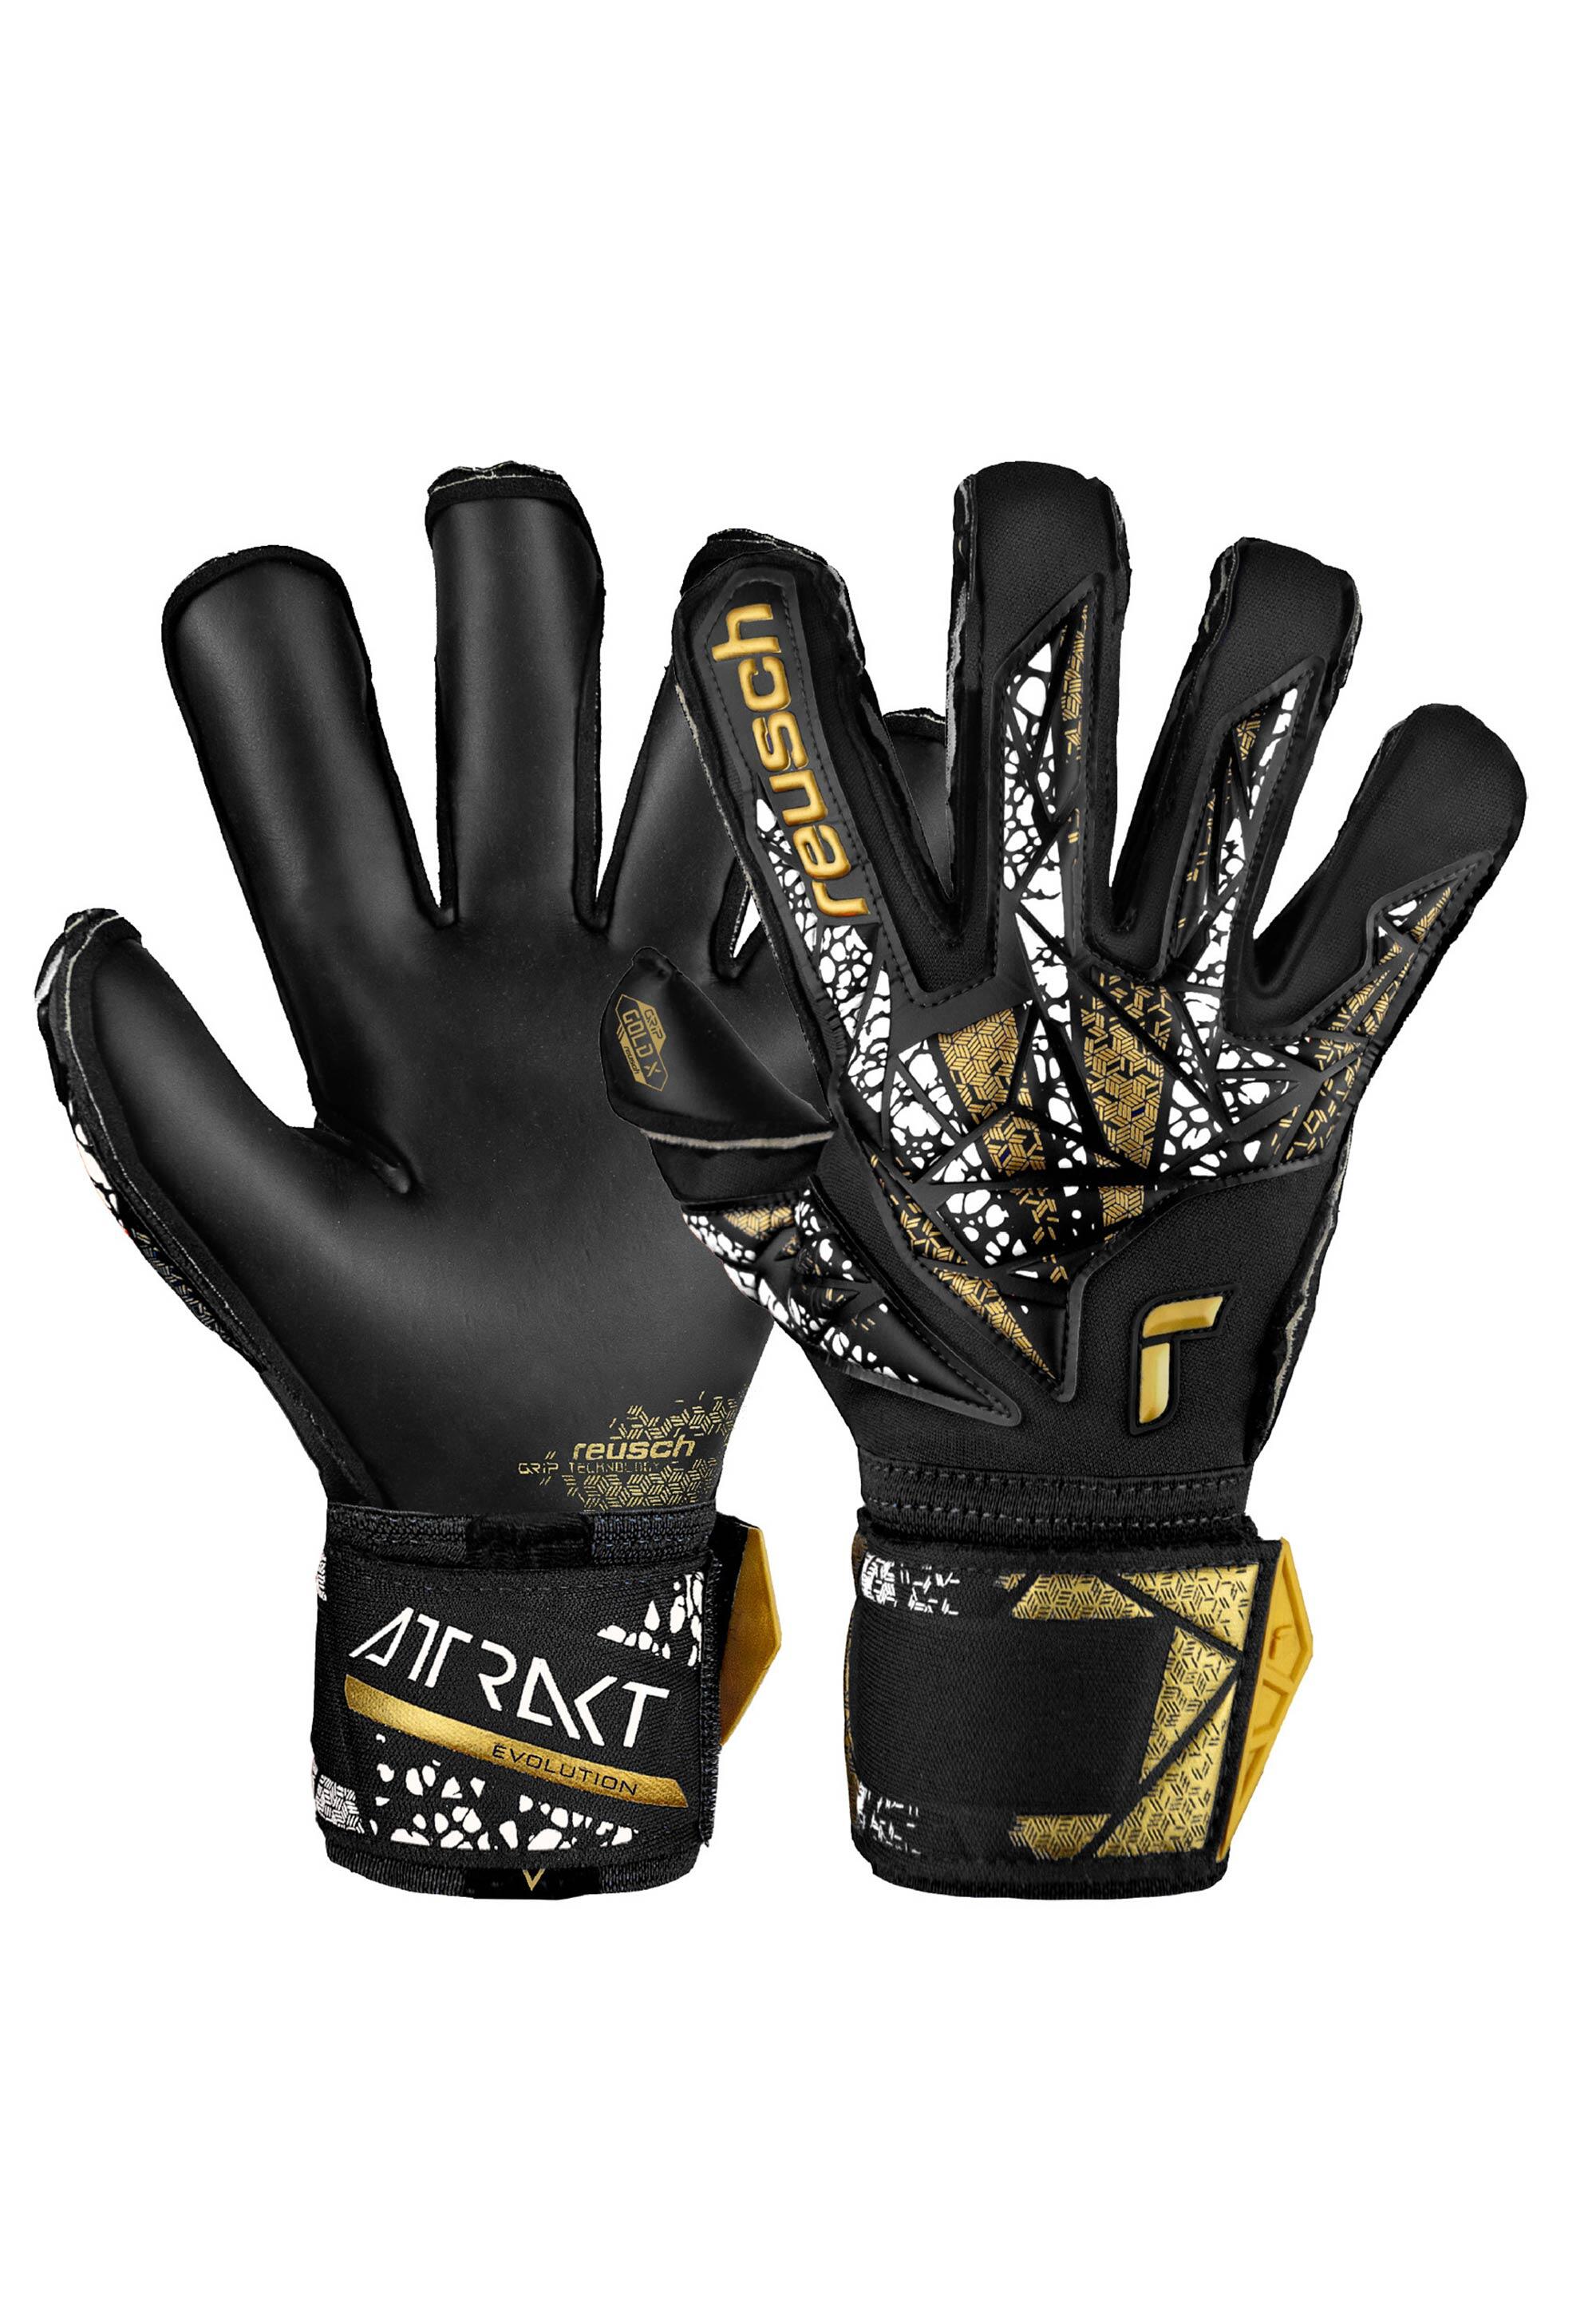 Reusch Attrakt Gold X Evolution Cut Finger Support Goalkeeper Gloves 1/7